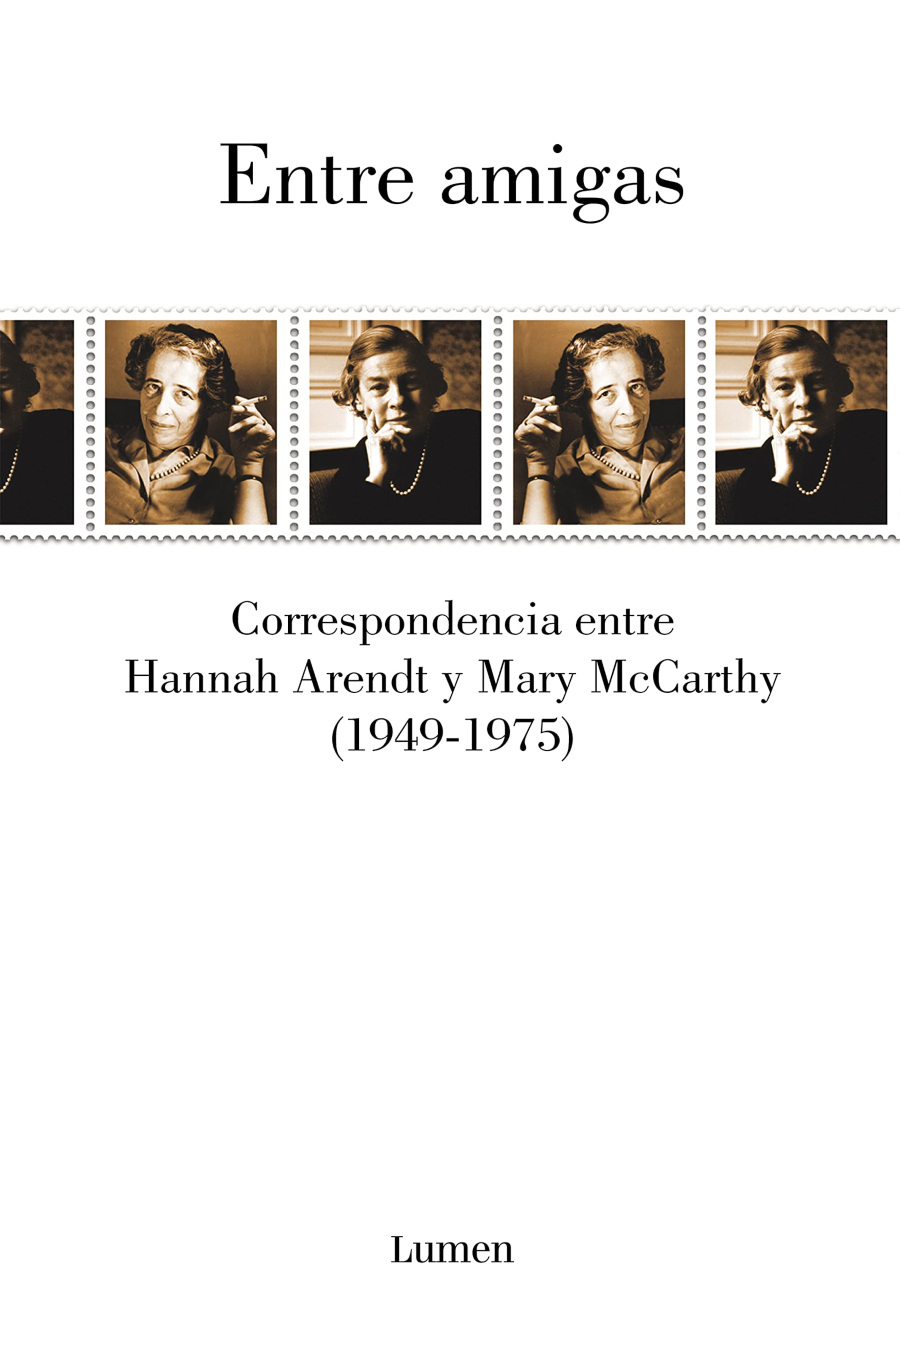 Entre amigas. Correspondencia entre Mary McCarthy y Hannah Arendt (1949-1975)